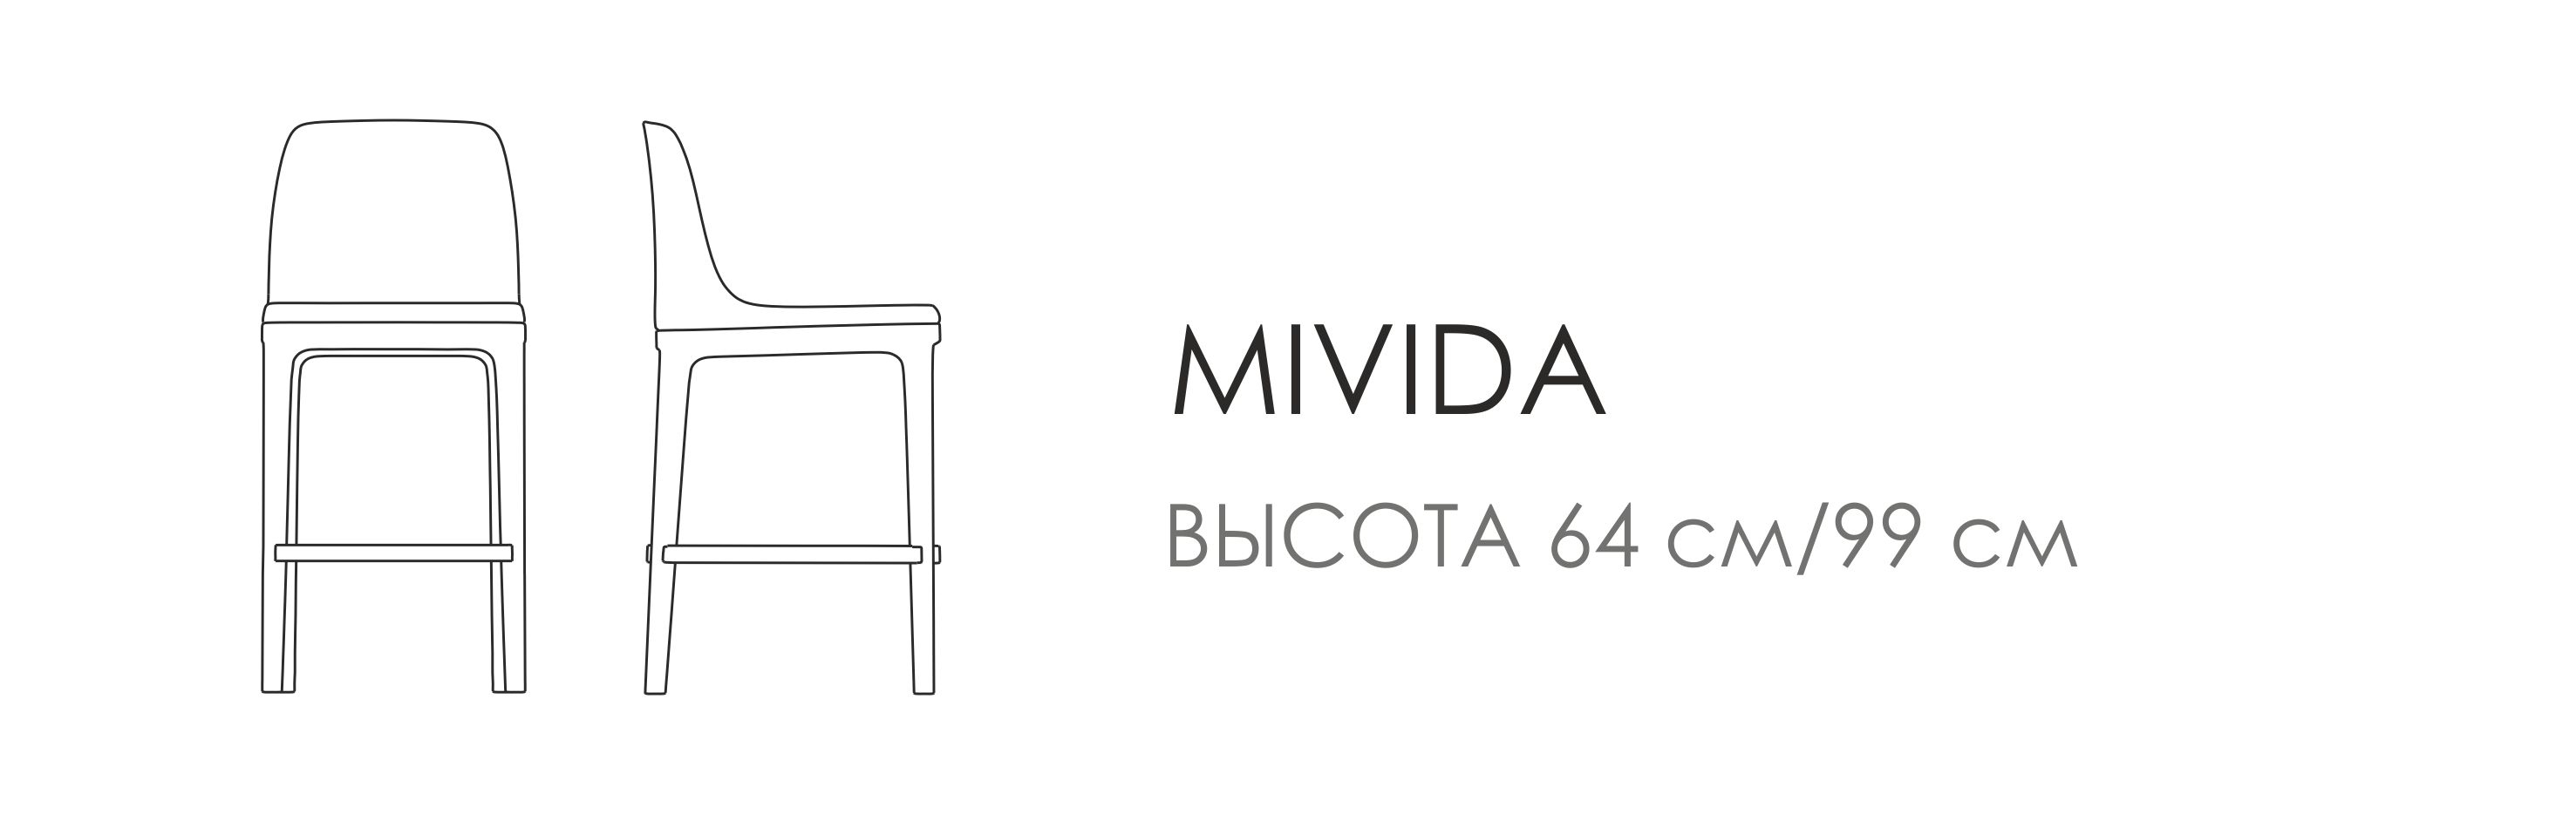 Барный стул Mivida - высота 64 см/99см